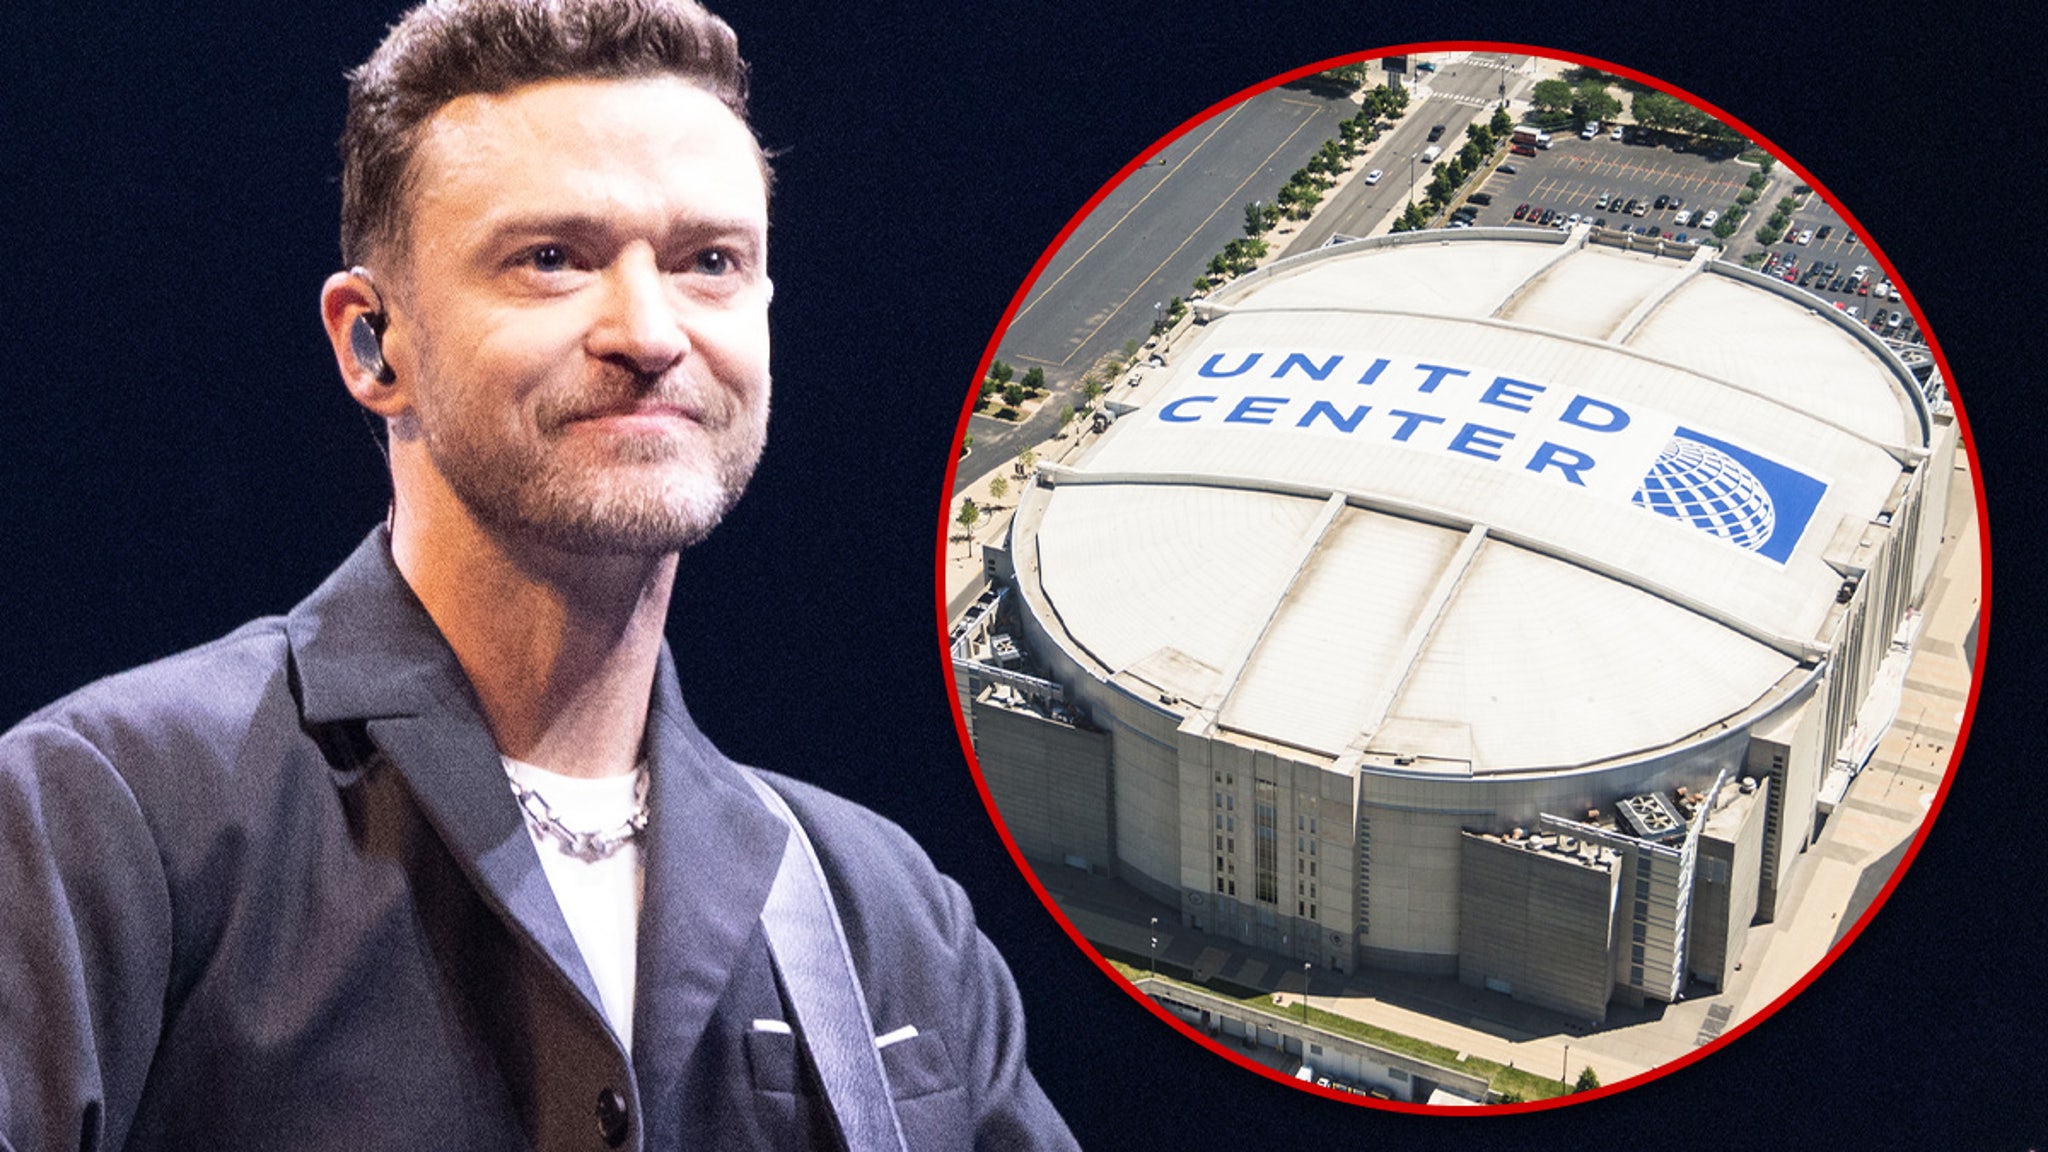 Justin Timberlake Still Planning to Perform in Chicago Despite DWI Arrest